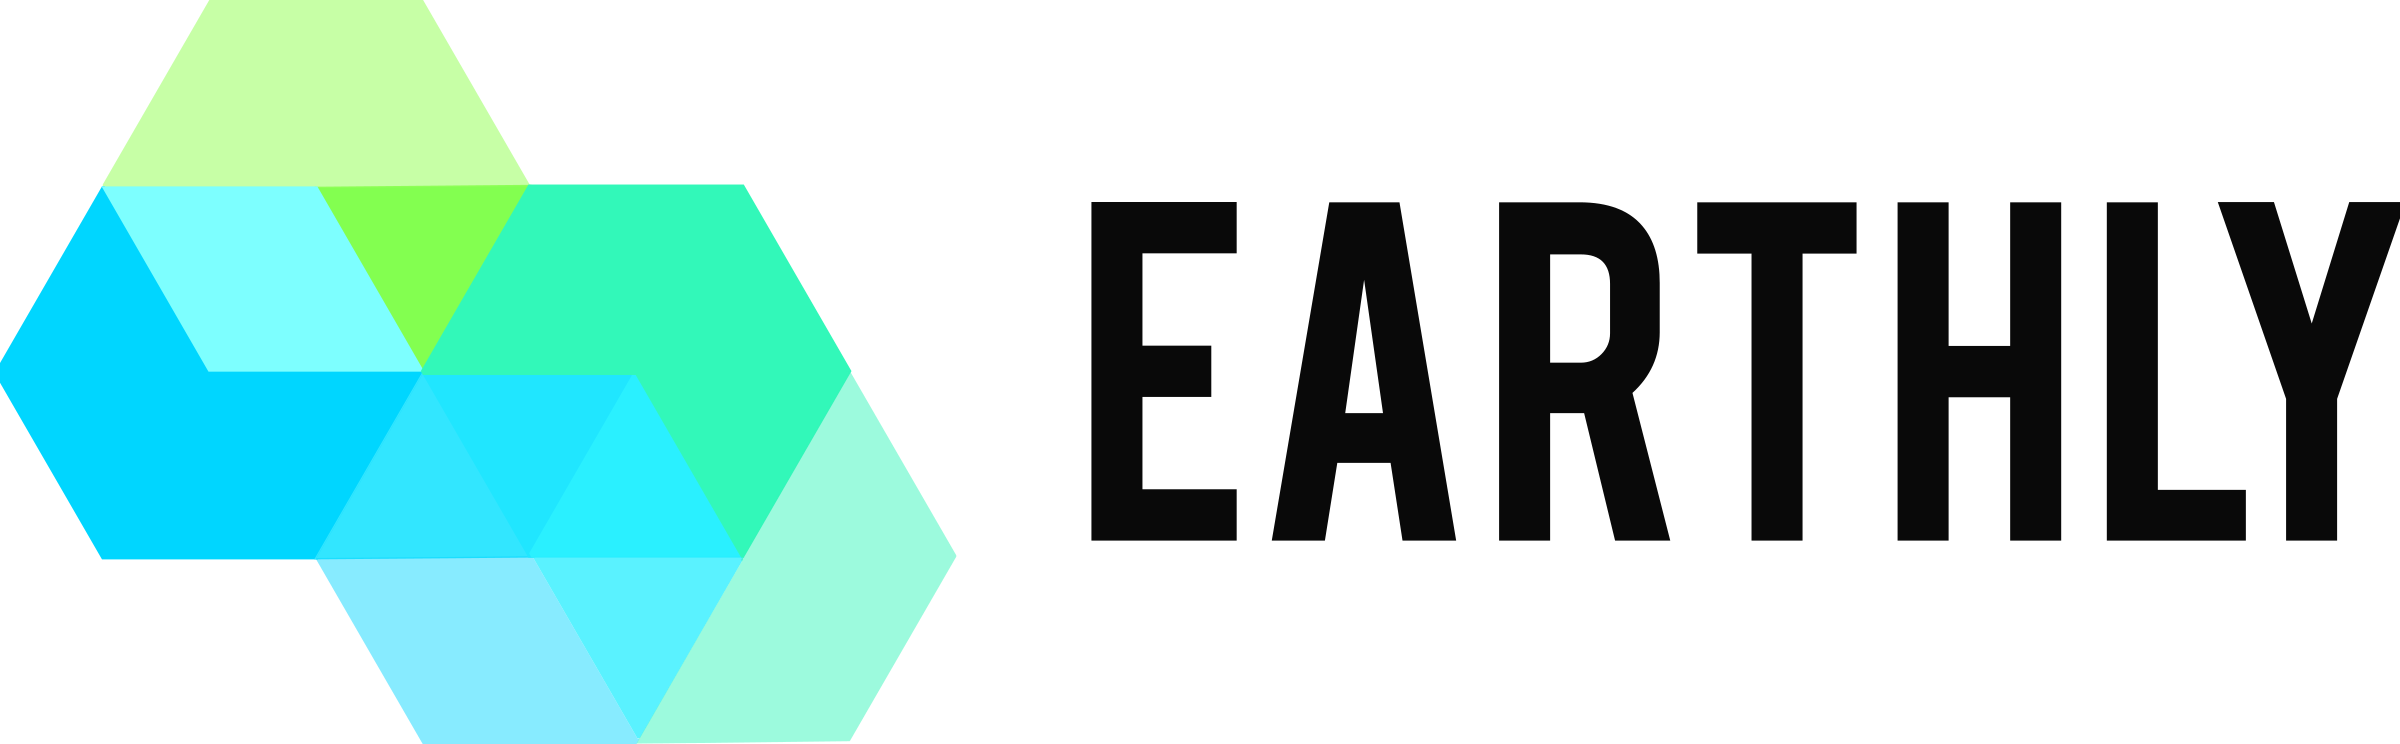 earthly-logo